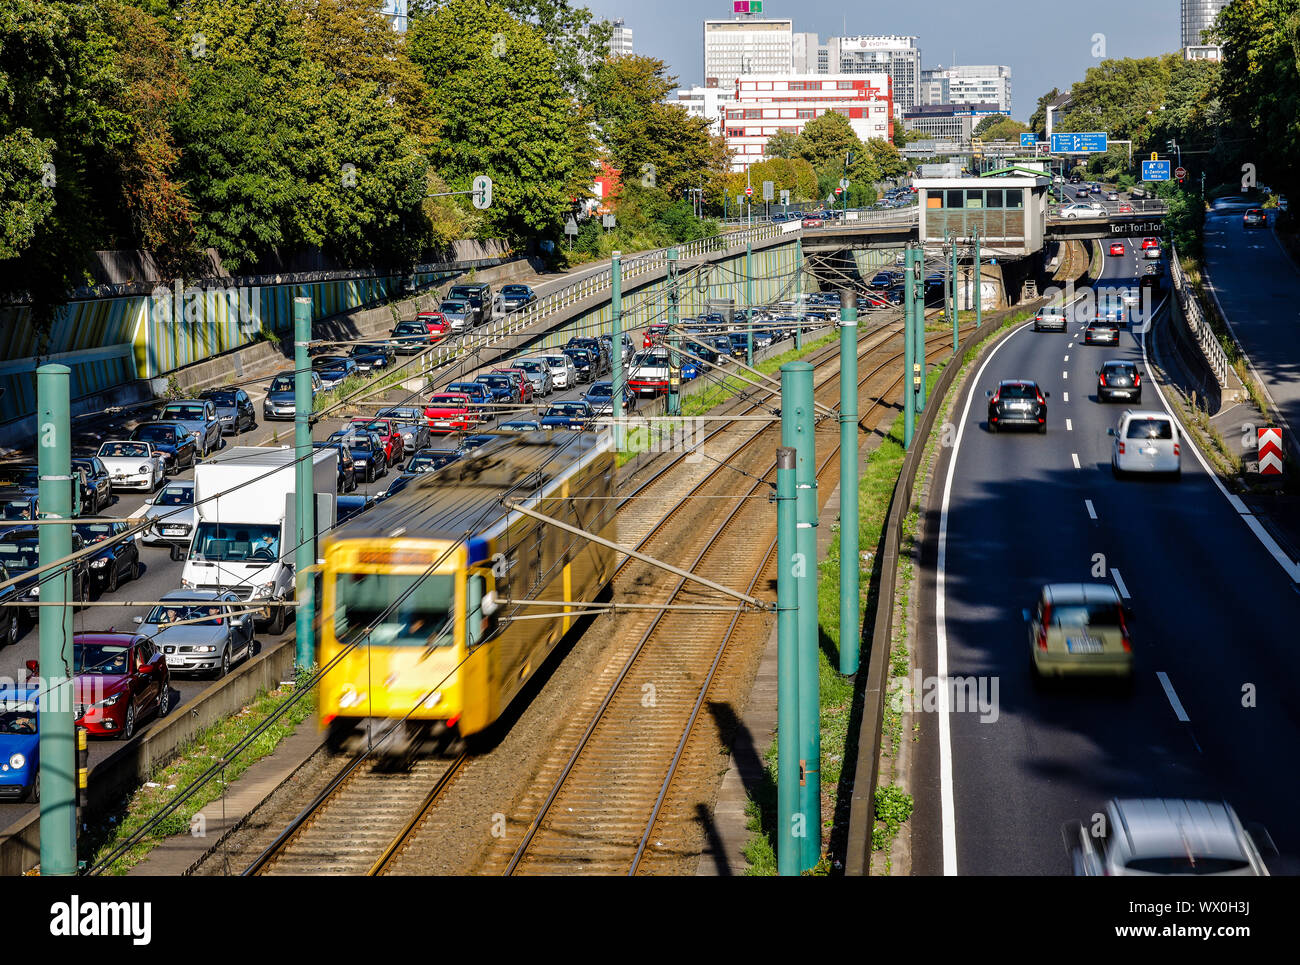 Essen, la zona della Ruhr, Renania settentrionale-Vestfalia, Germania - Incidente la congestione sull'autostrada A40, il trasporto pubblico, qui la metropolitana U18 ha la corsa libera, Foto Stock